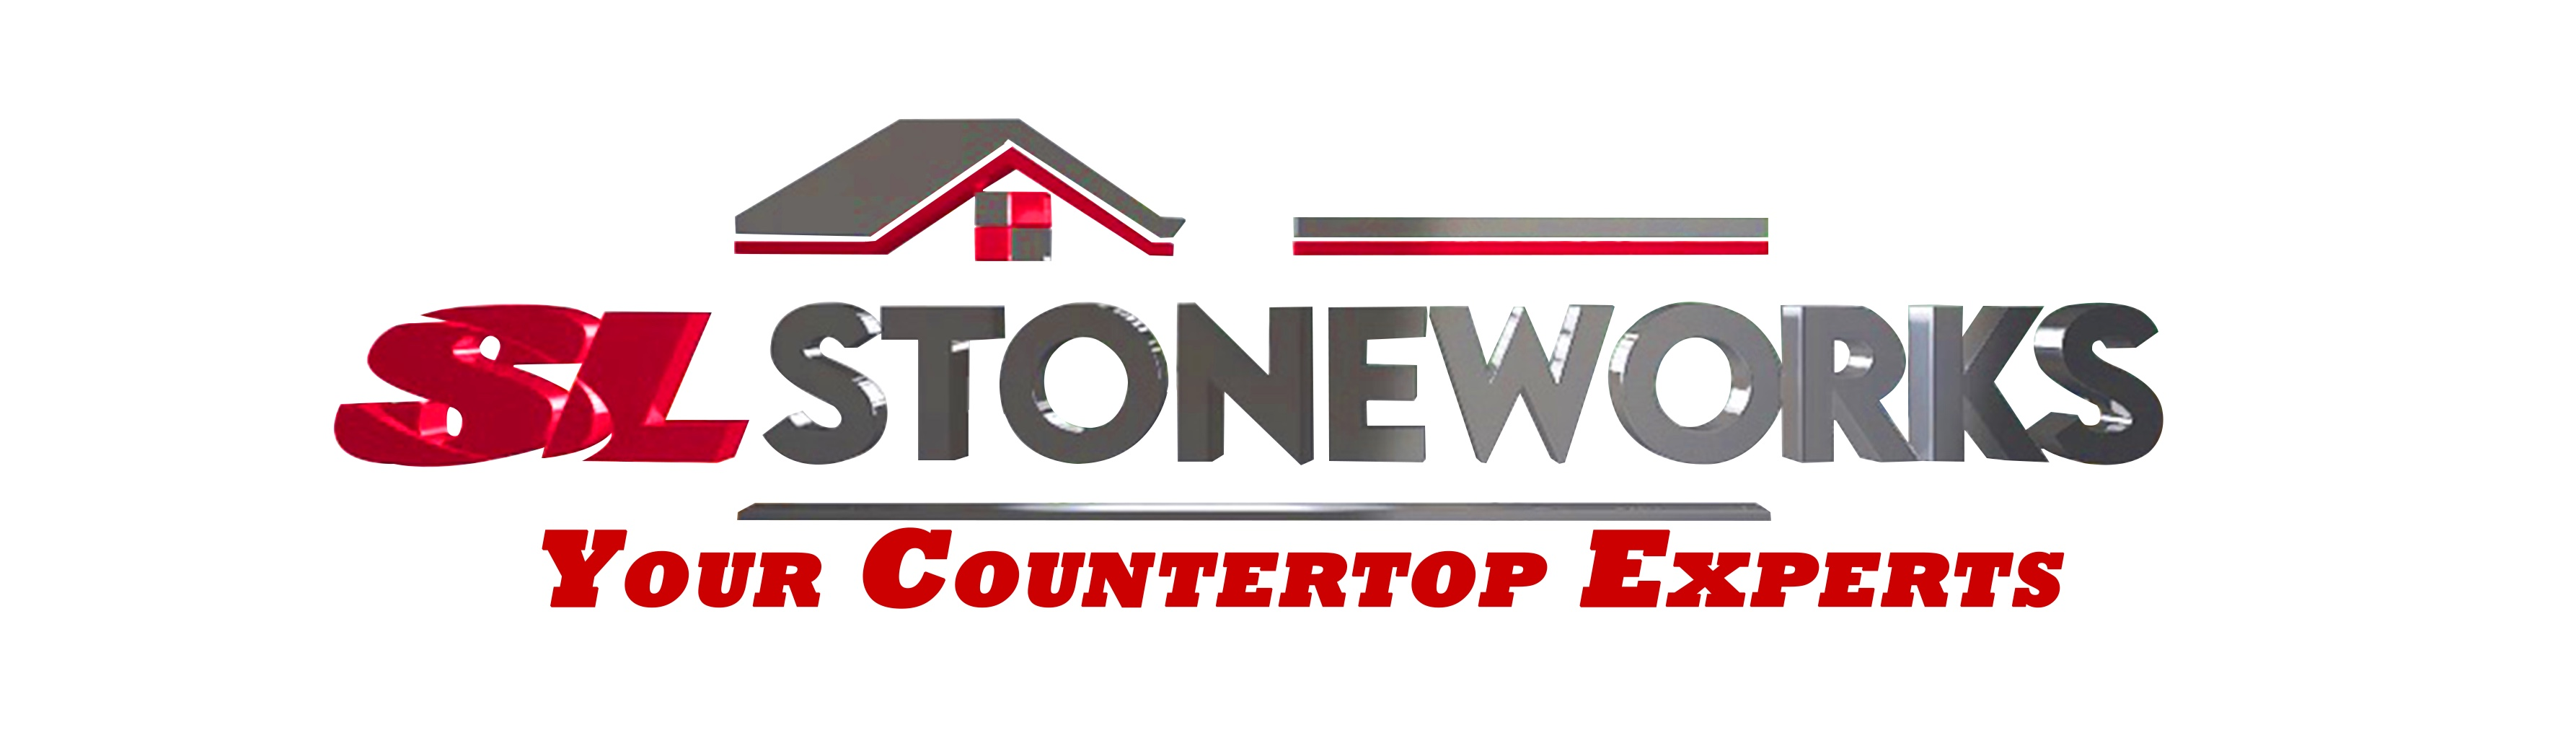 SL Stone Works Inc.'s logo